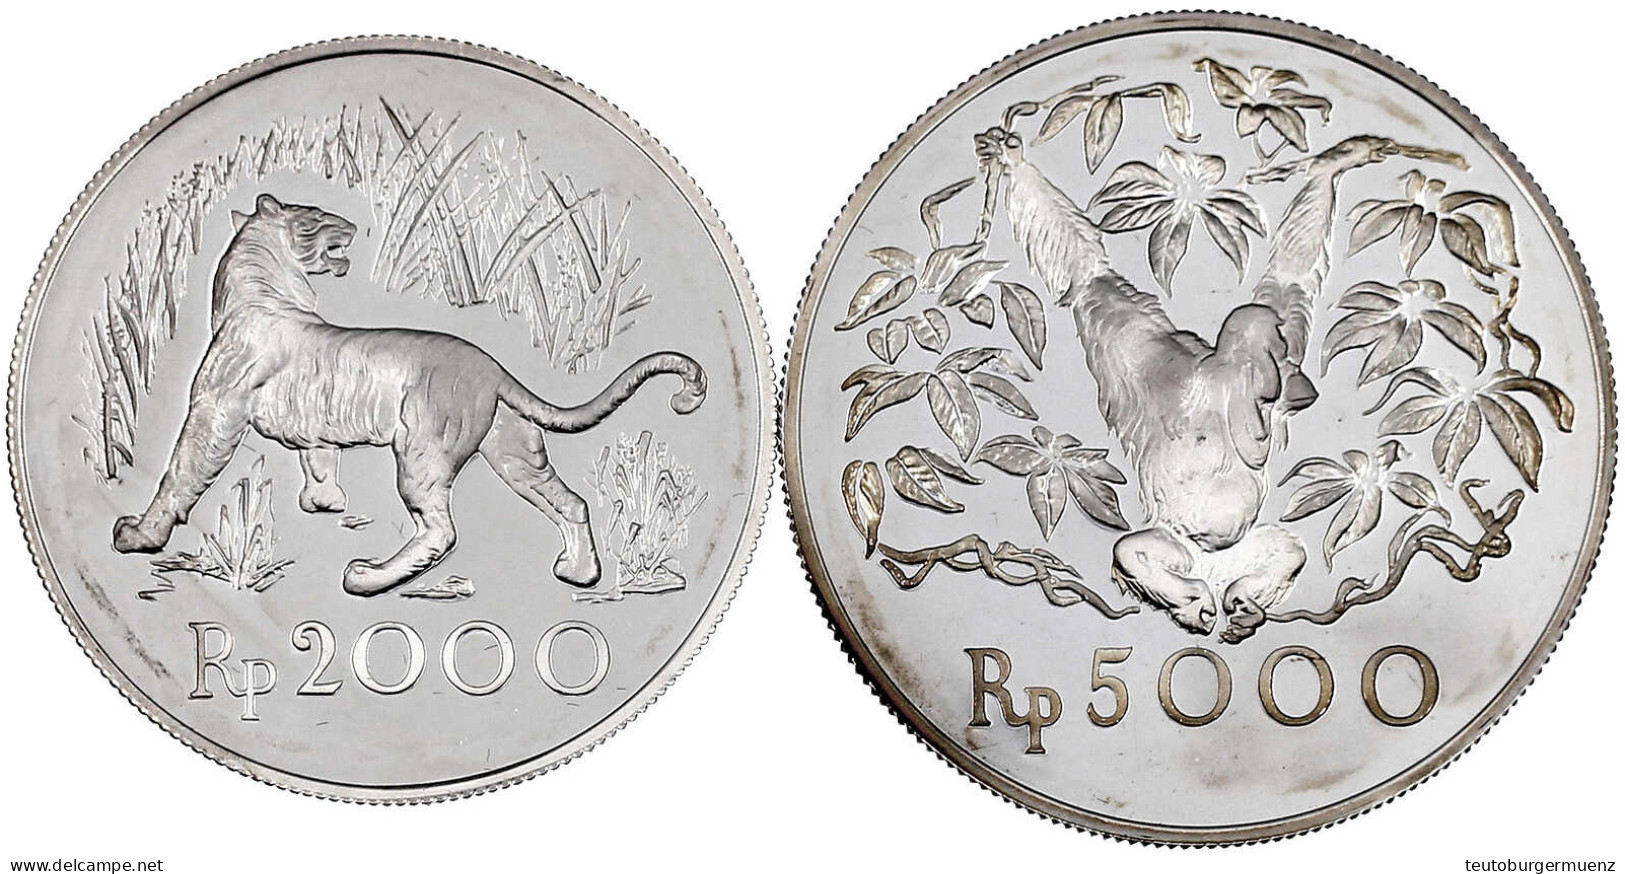 2 Silbermünzen: 2000 Und 5000 Rupien 1974. Java Tiger Und Orang-Utan. Polierte Platte. Krause/Mishler 39 Und 40a. - Indonesien